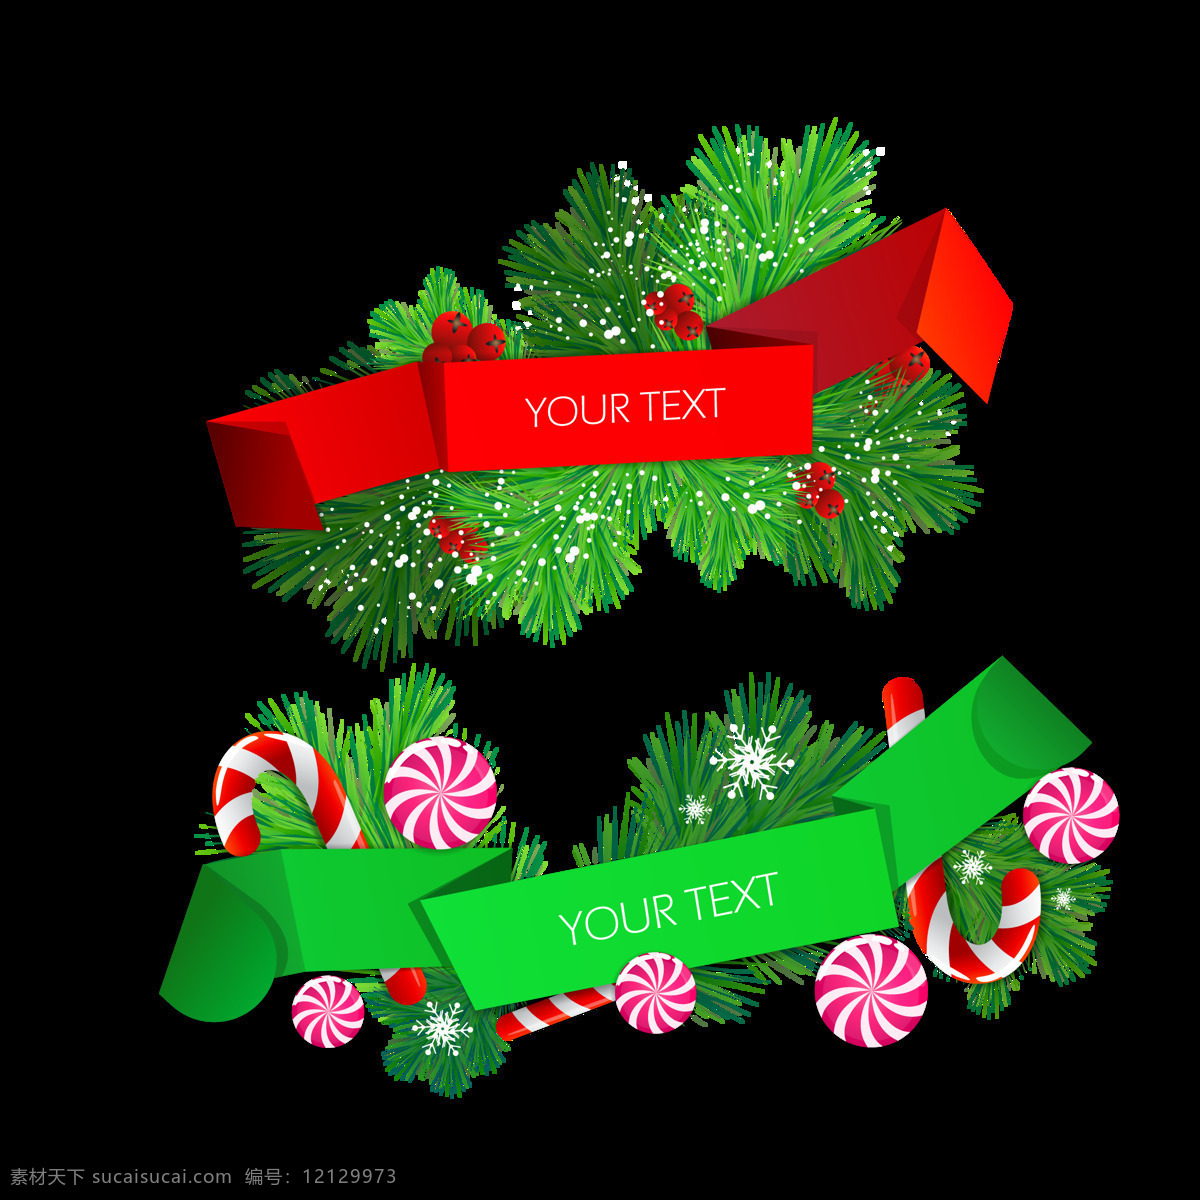 绿色 圣诞 松枝 棒棒糖 装饰 元素 抽象素材 抽象元素 拐杖 平安夜 圣诞节 圣诞节装饰 圣诞快乐 圣诞透明元素 圣诞装饰 新年快乐